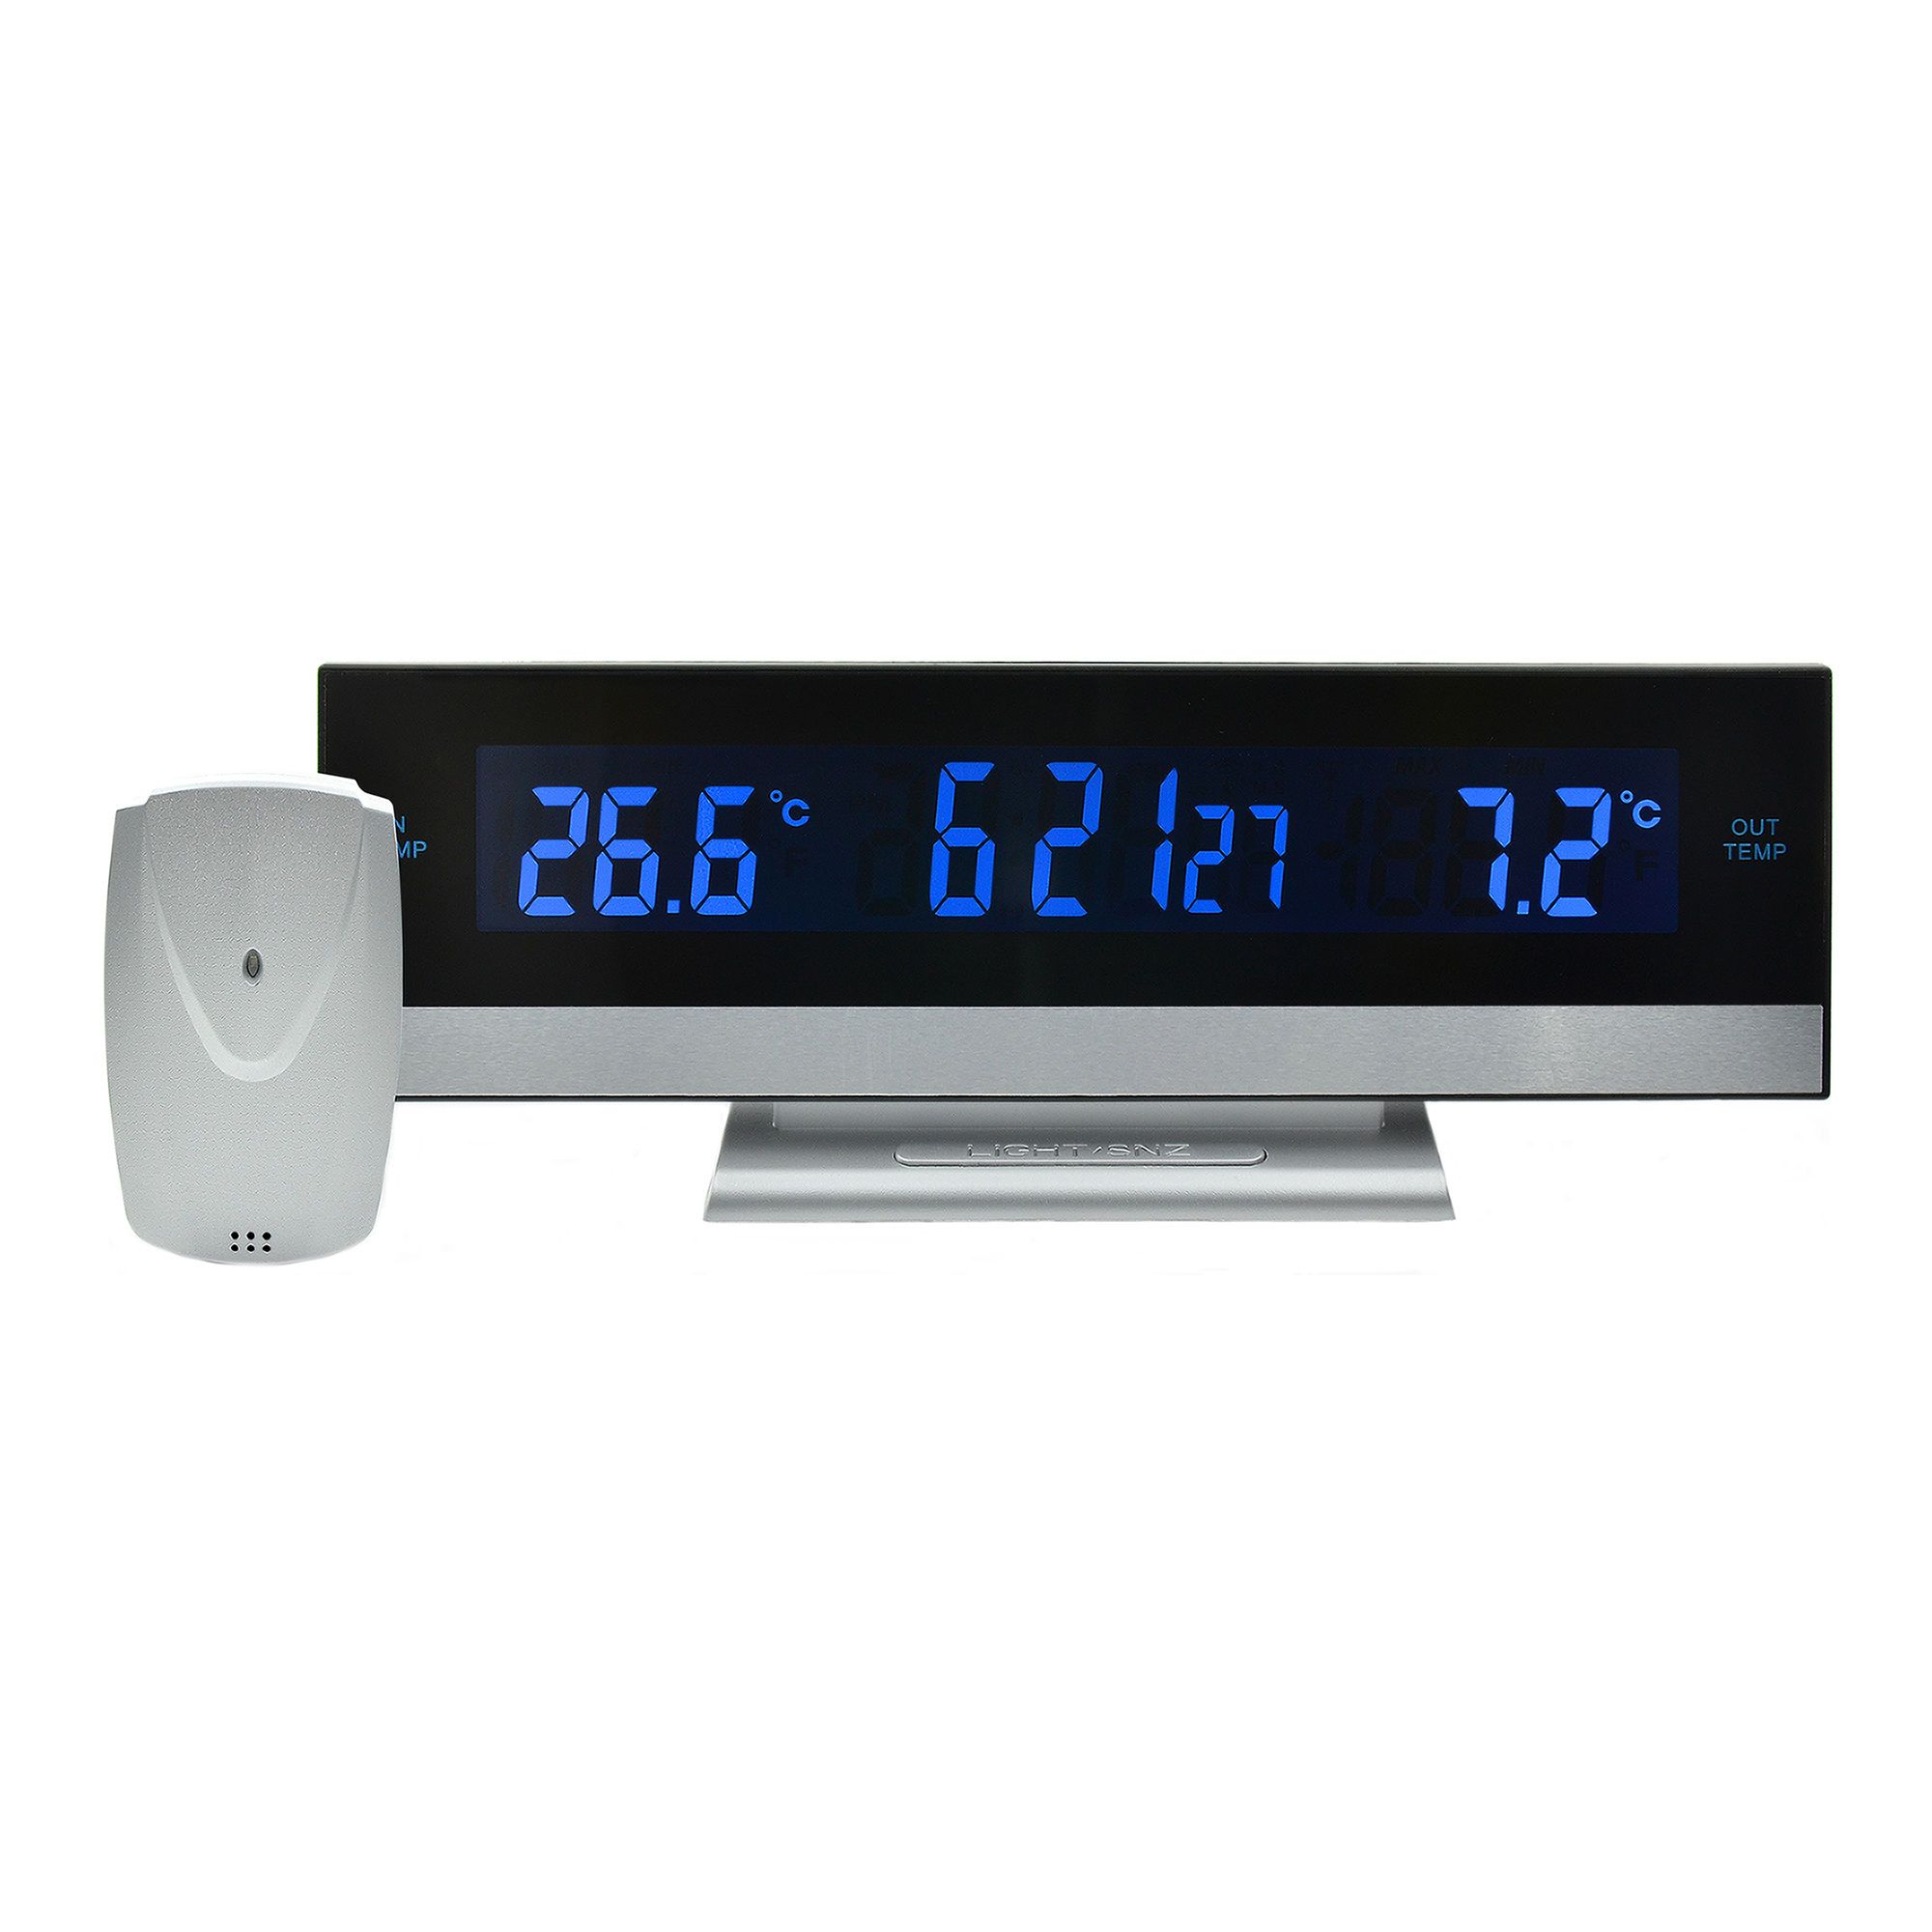 Thermomètre pour réfrigérateur/congélateur BIOS de BIOS Weather